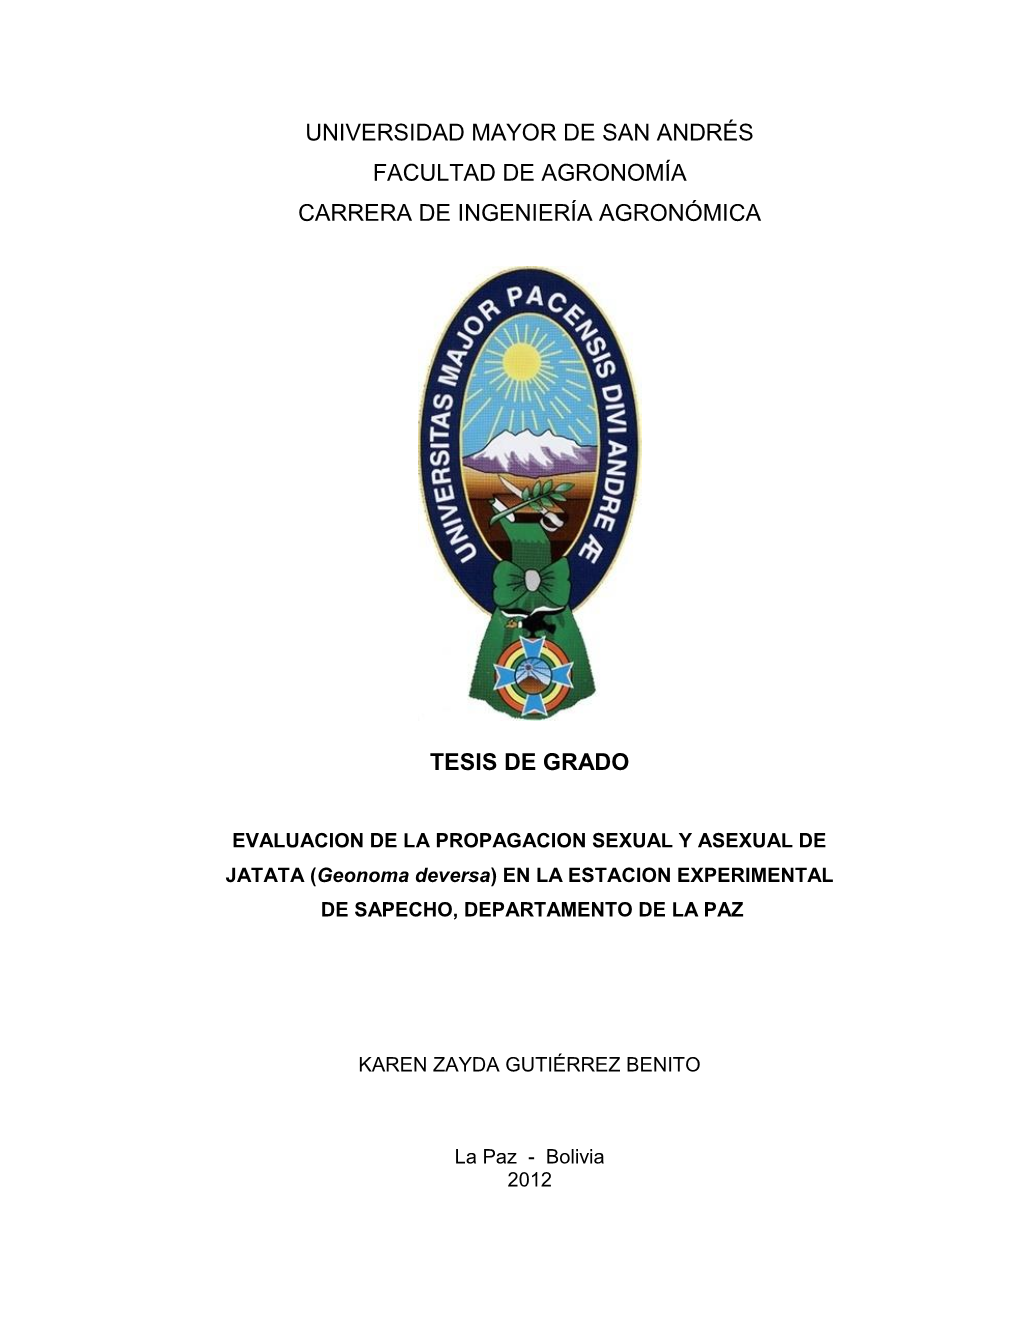 EVALUACION DE LA PROPAGACION SEXUAL Y ASEXUAL DE JATATA (Geonoma Deversa) EN LA ESTACION EXPERIMENTAL DE SAPECHO, DEPARTAMENTO DE LA PAZ